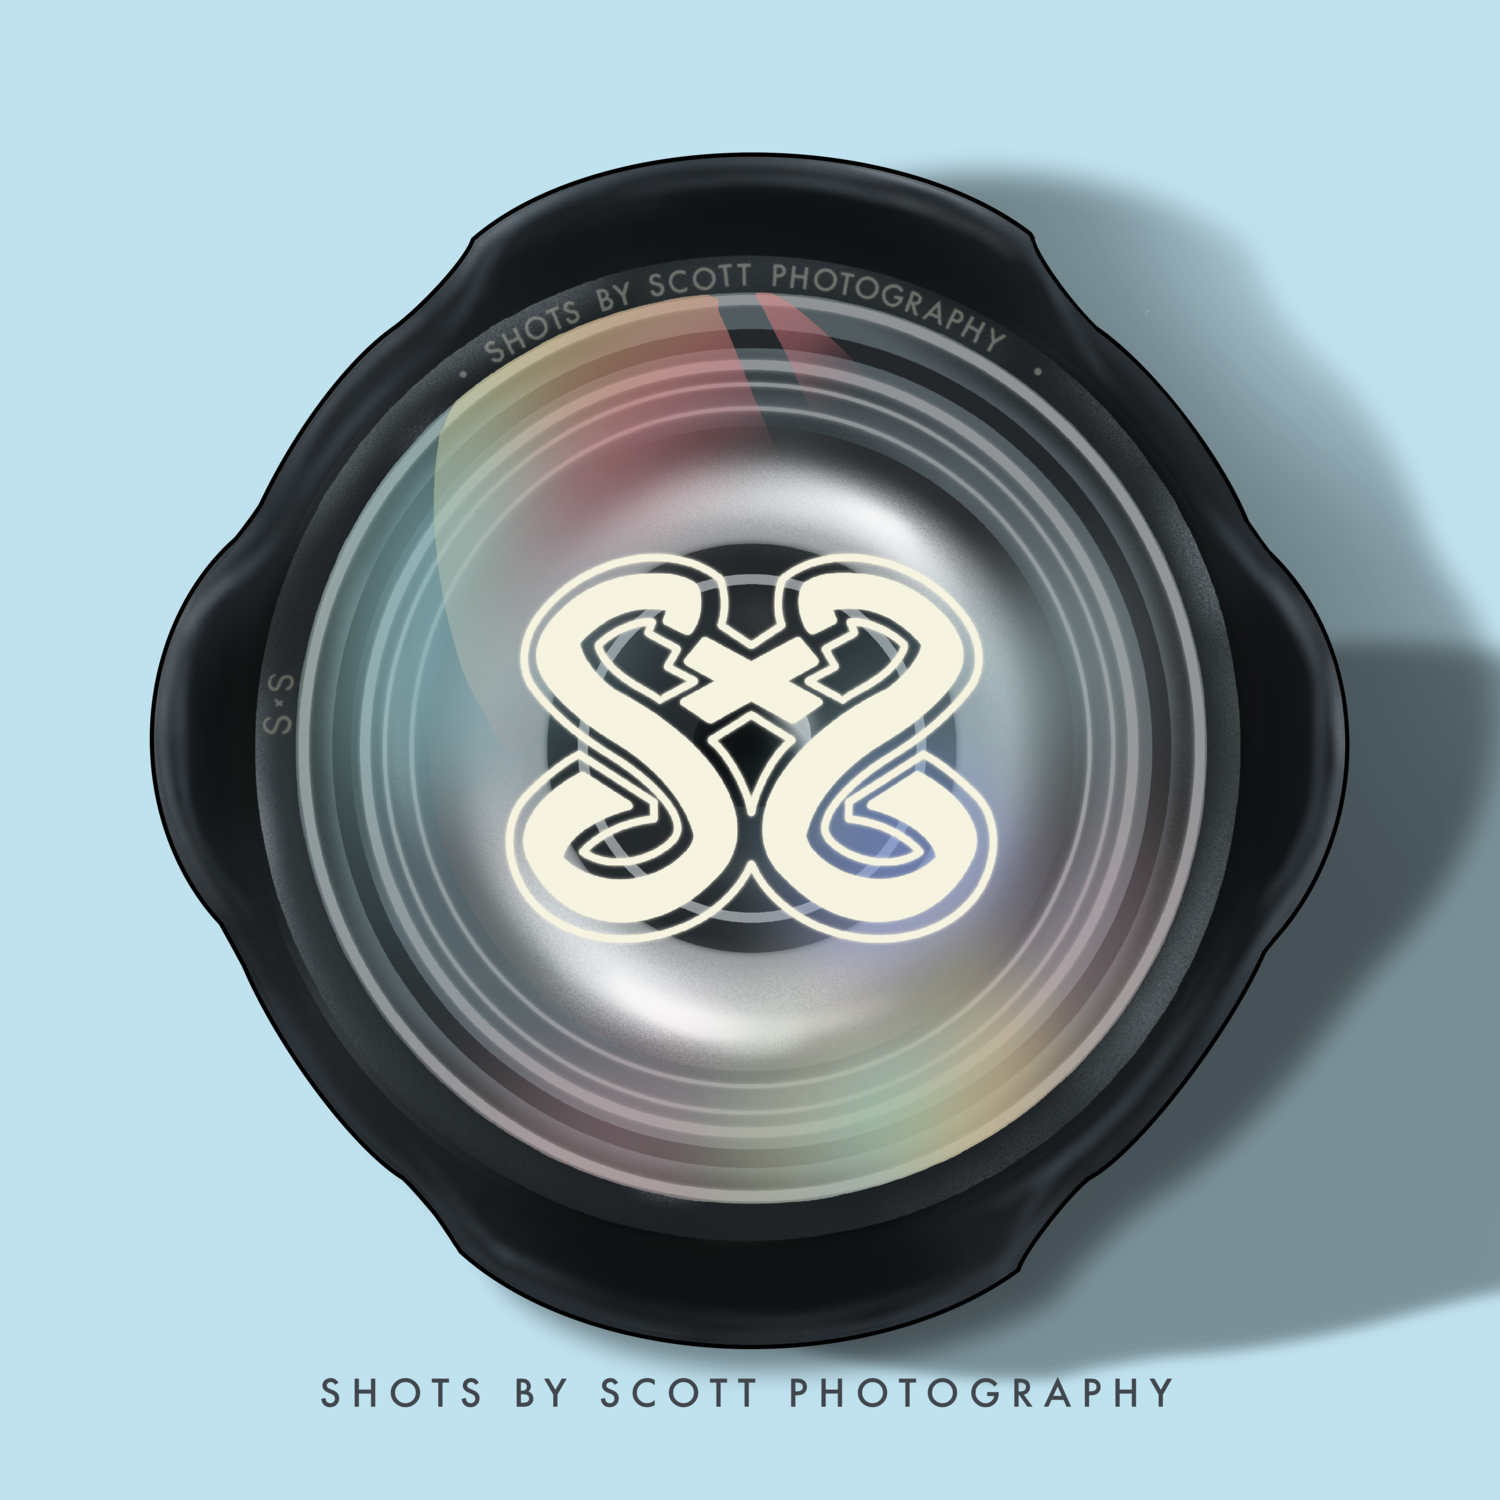 Shots by Scott